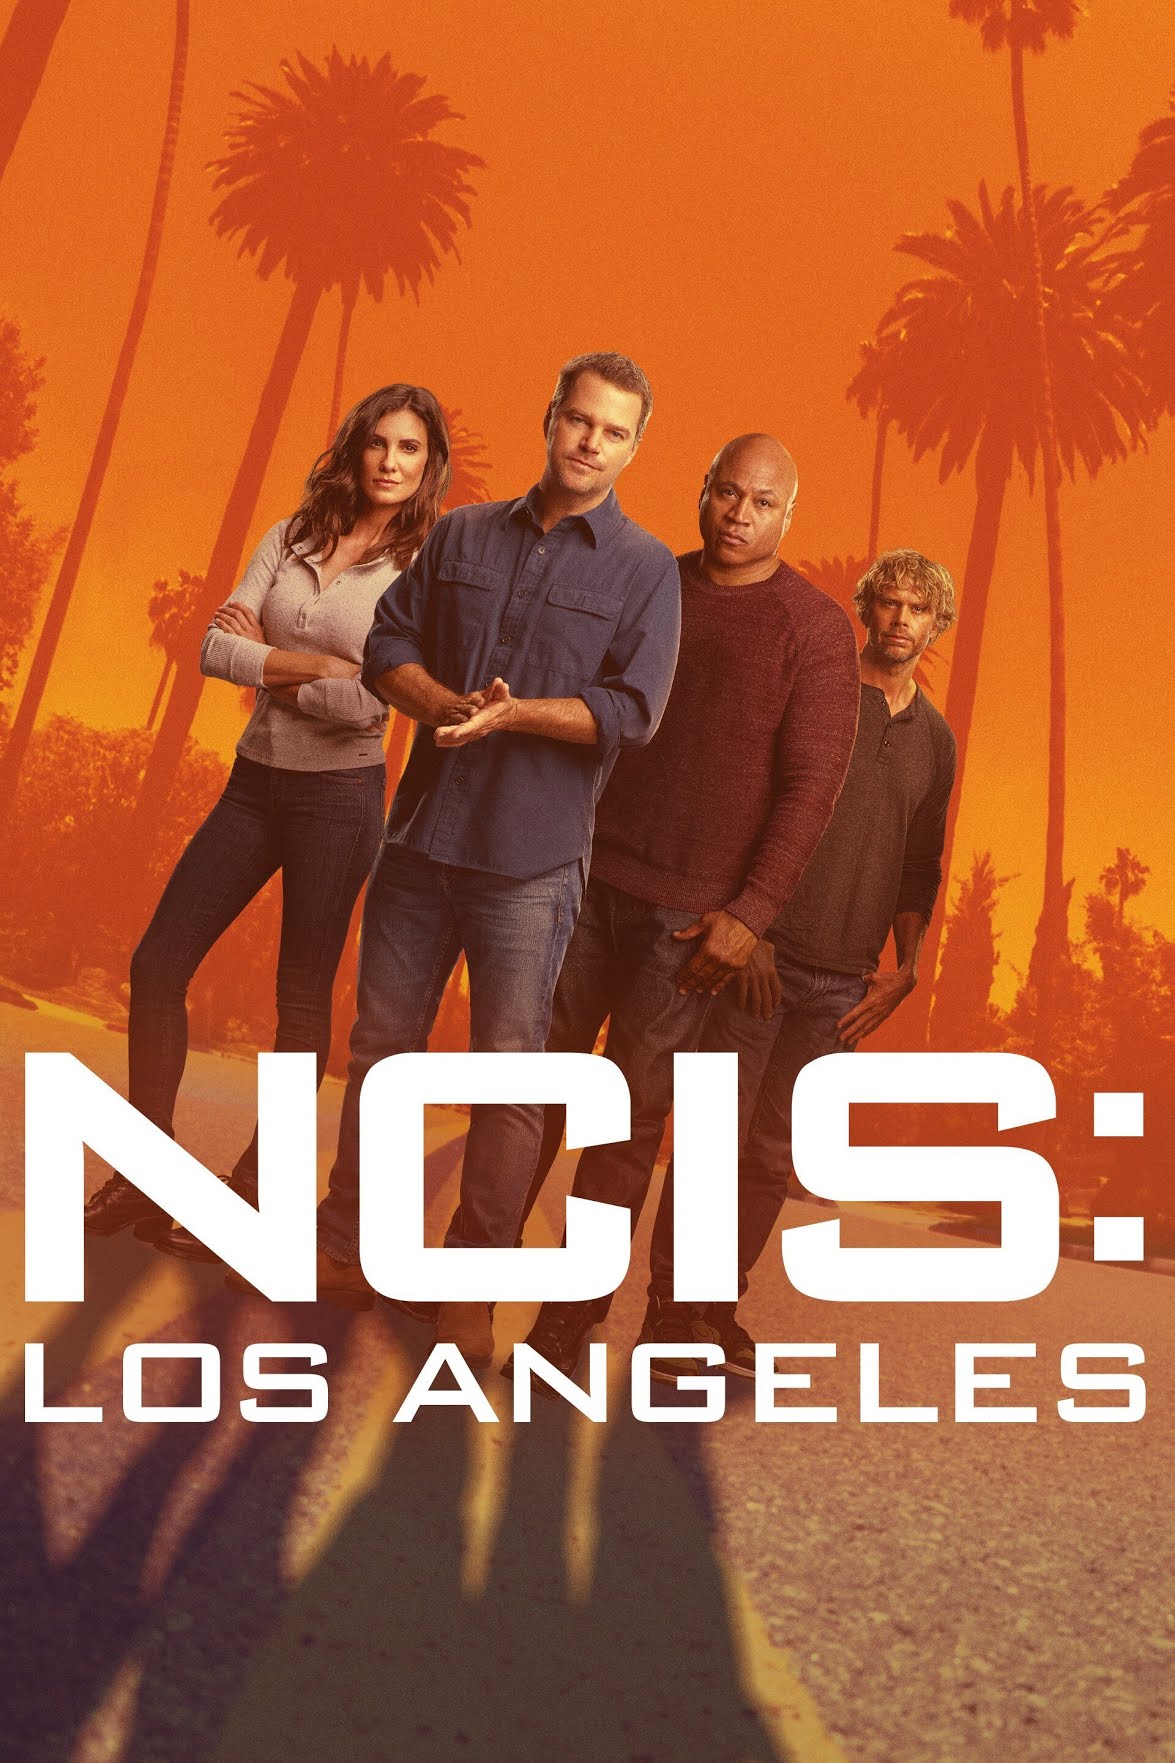 NCIS Los Angeles S05 720p WEB-DL x264 -S-J-K-NLSubs.nzb